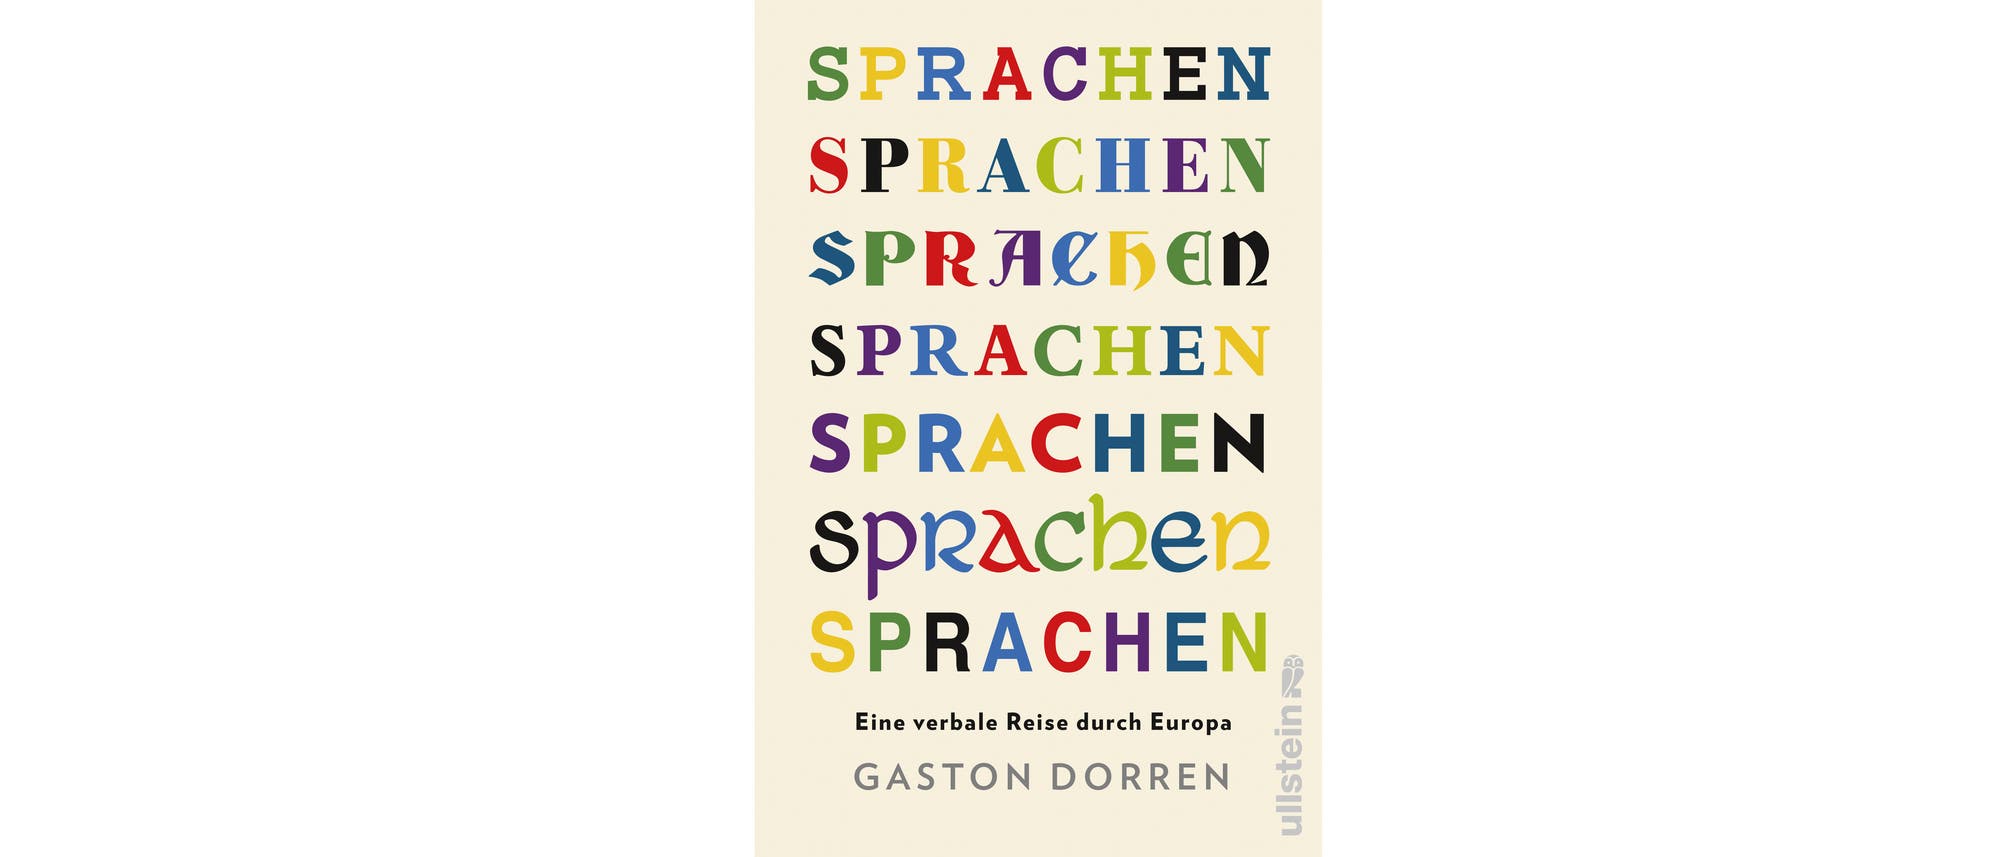 Cover des Buches "Sprachen" von Gaston Dorren.